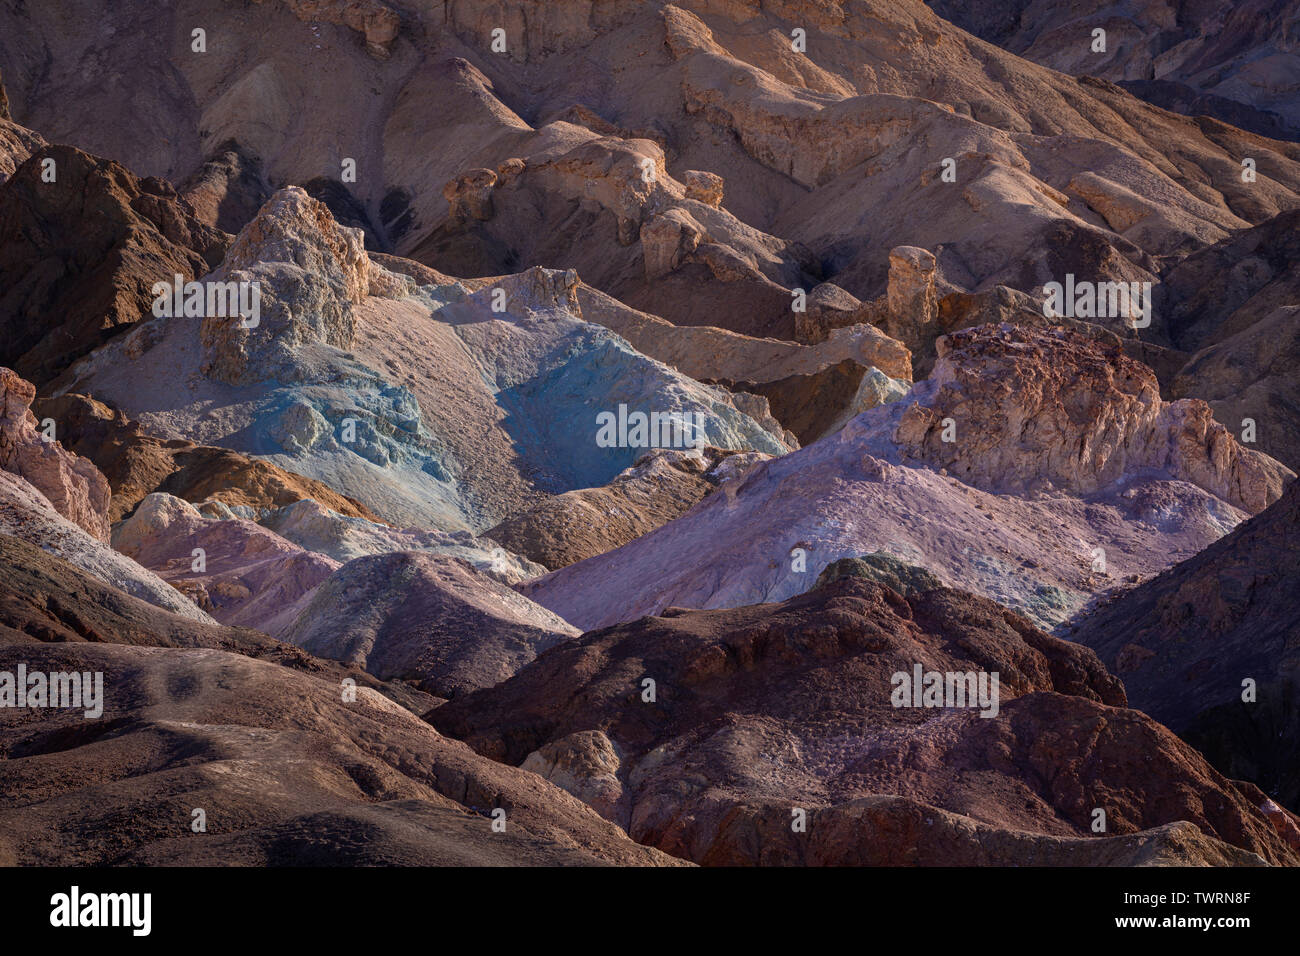 La palette de l'artiste, Death Valley National Park, en Californie. Banque D'Images